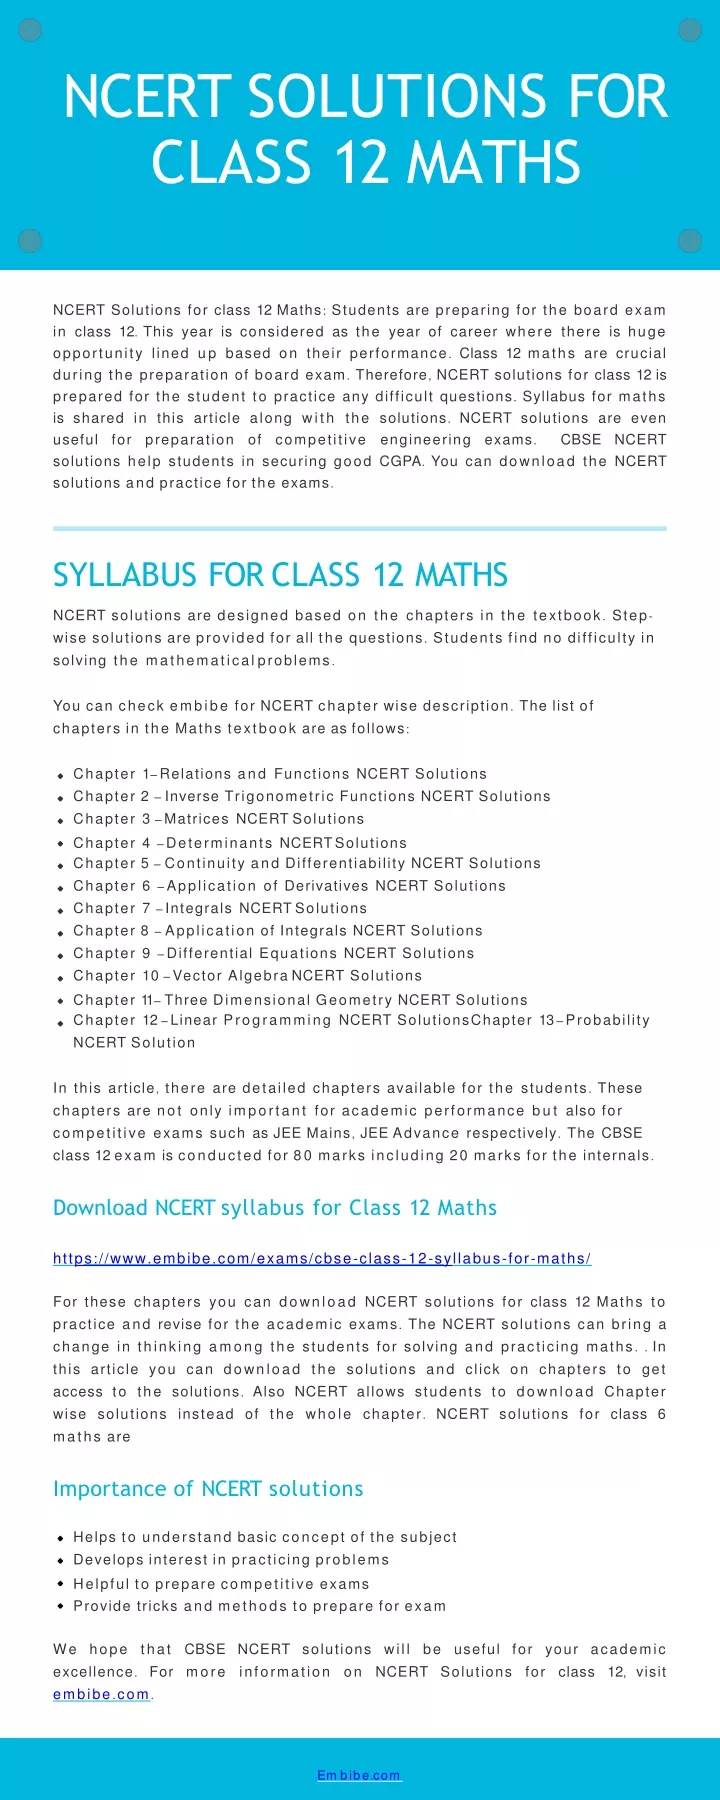 ncert solutions for class 12 maths